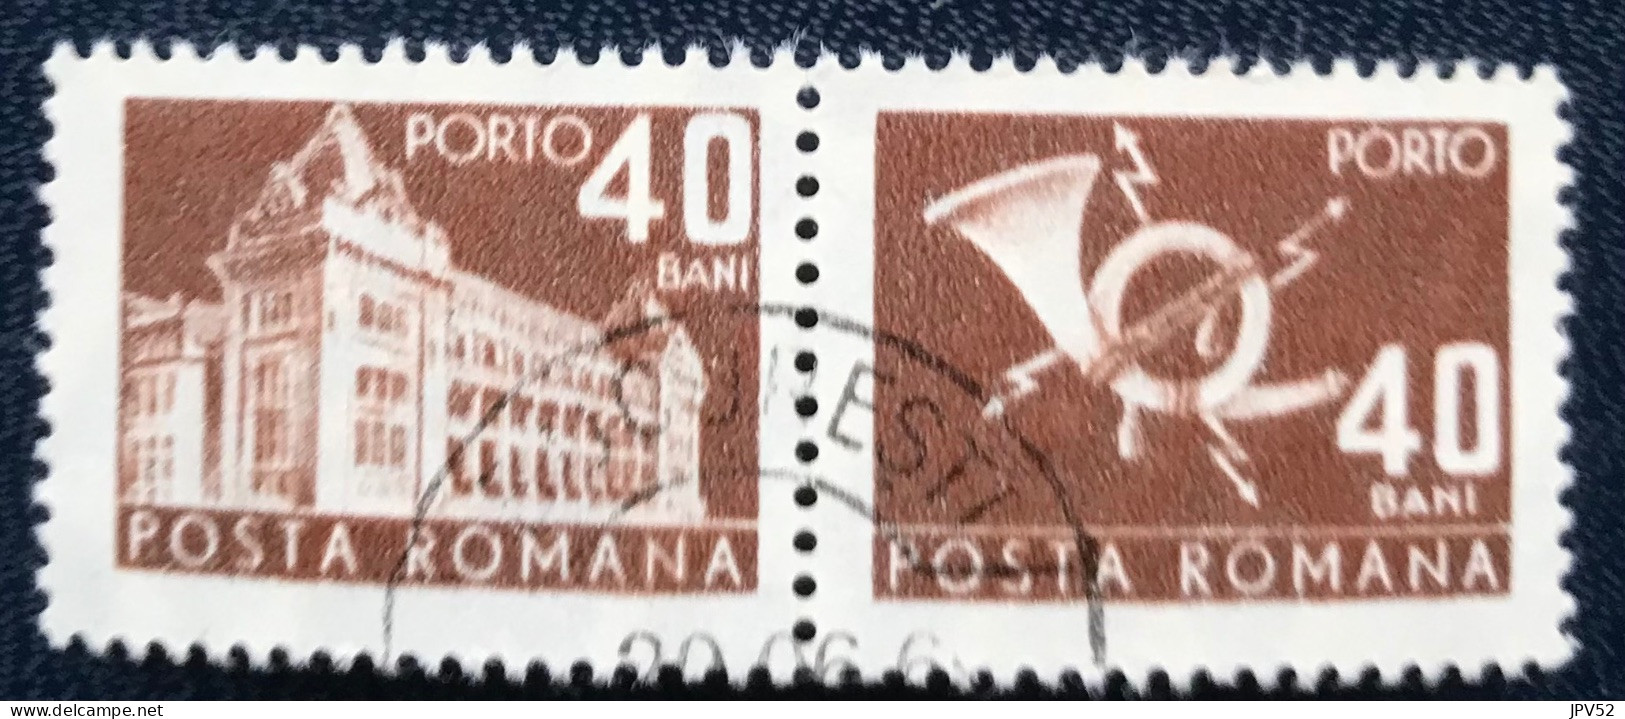 Romana - Roemenië - C14/54 - 1967 - (°)used - Michel 111 - Postkantoor & Posthoorn & Bliksem - Postage Due